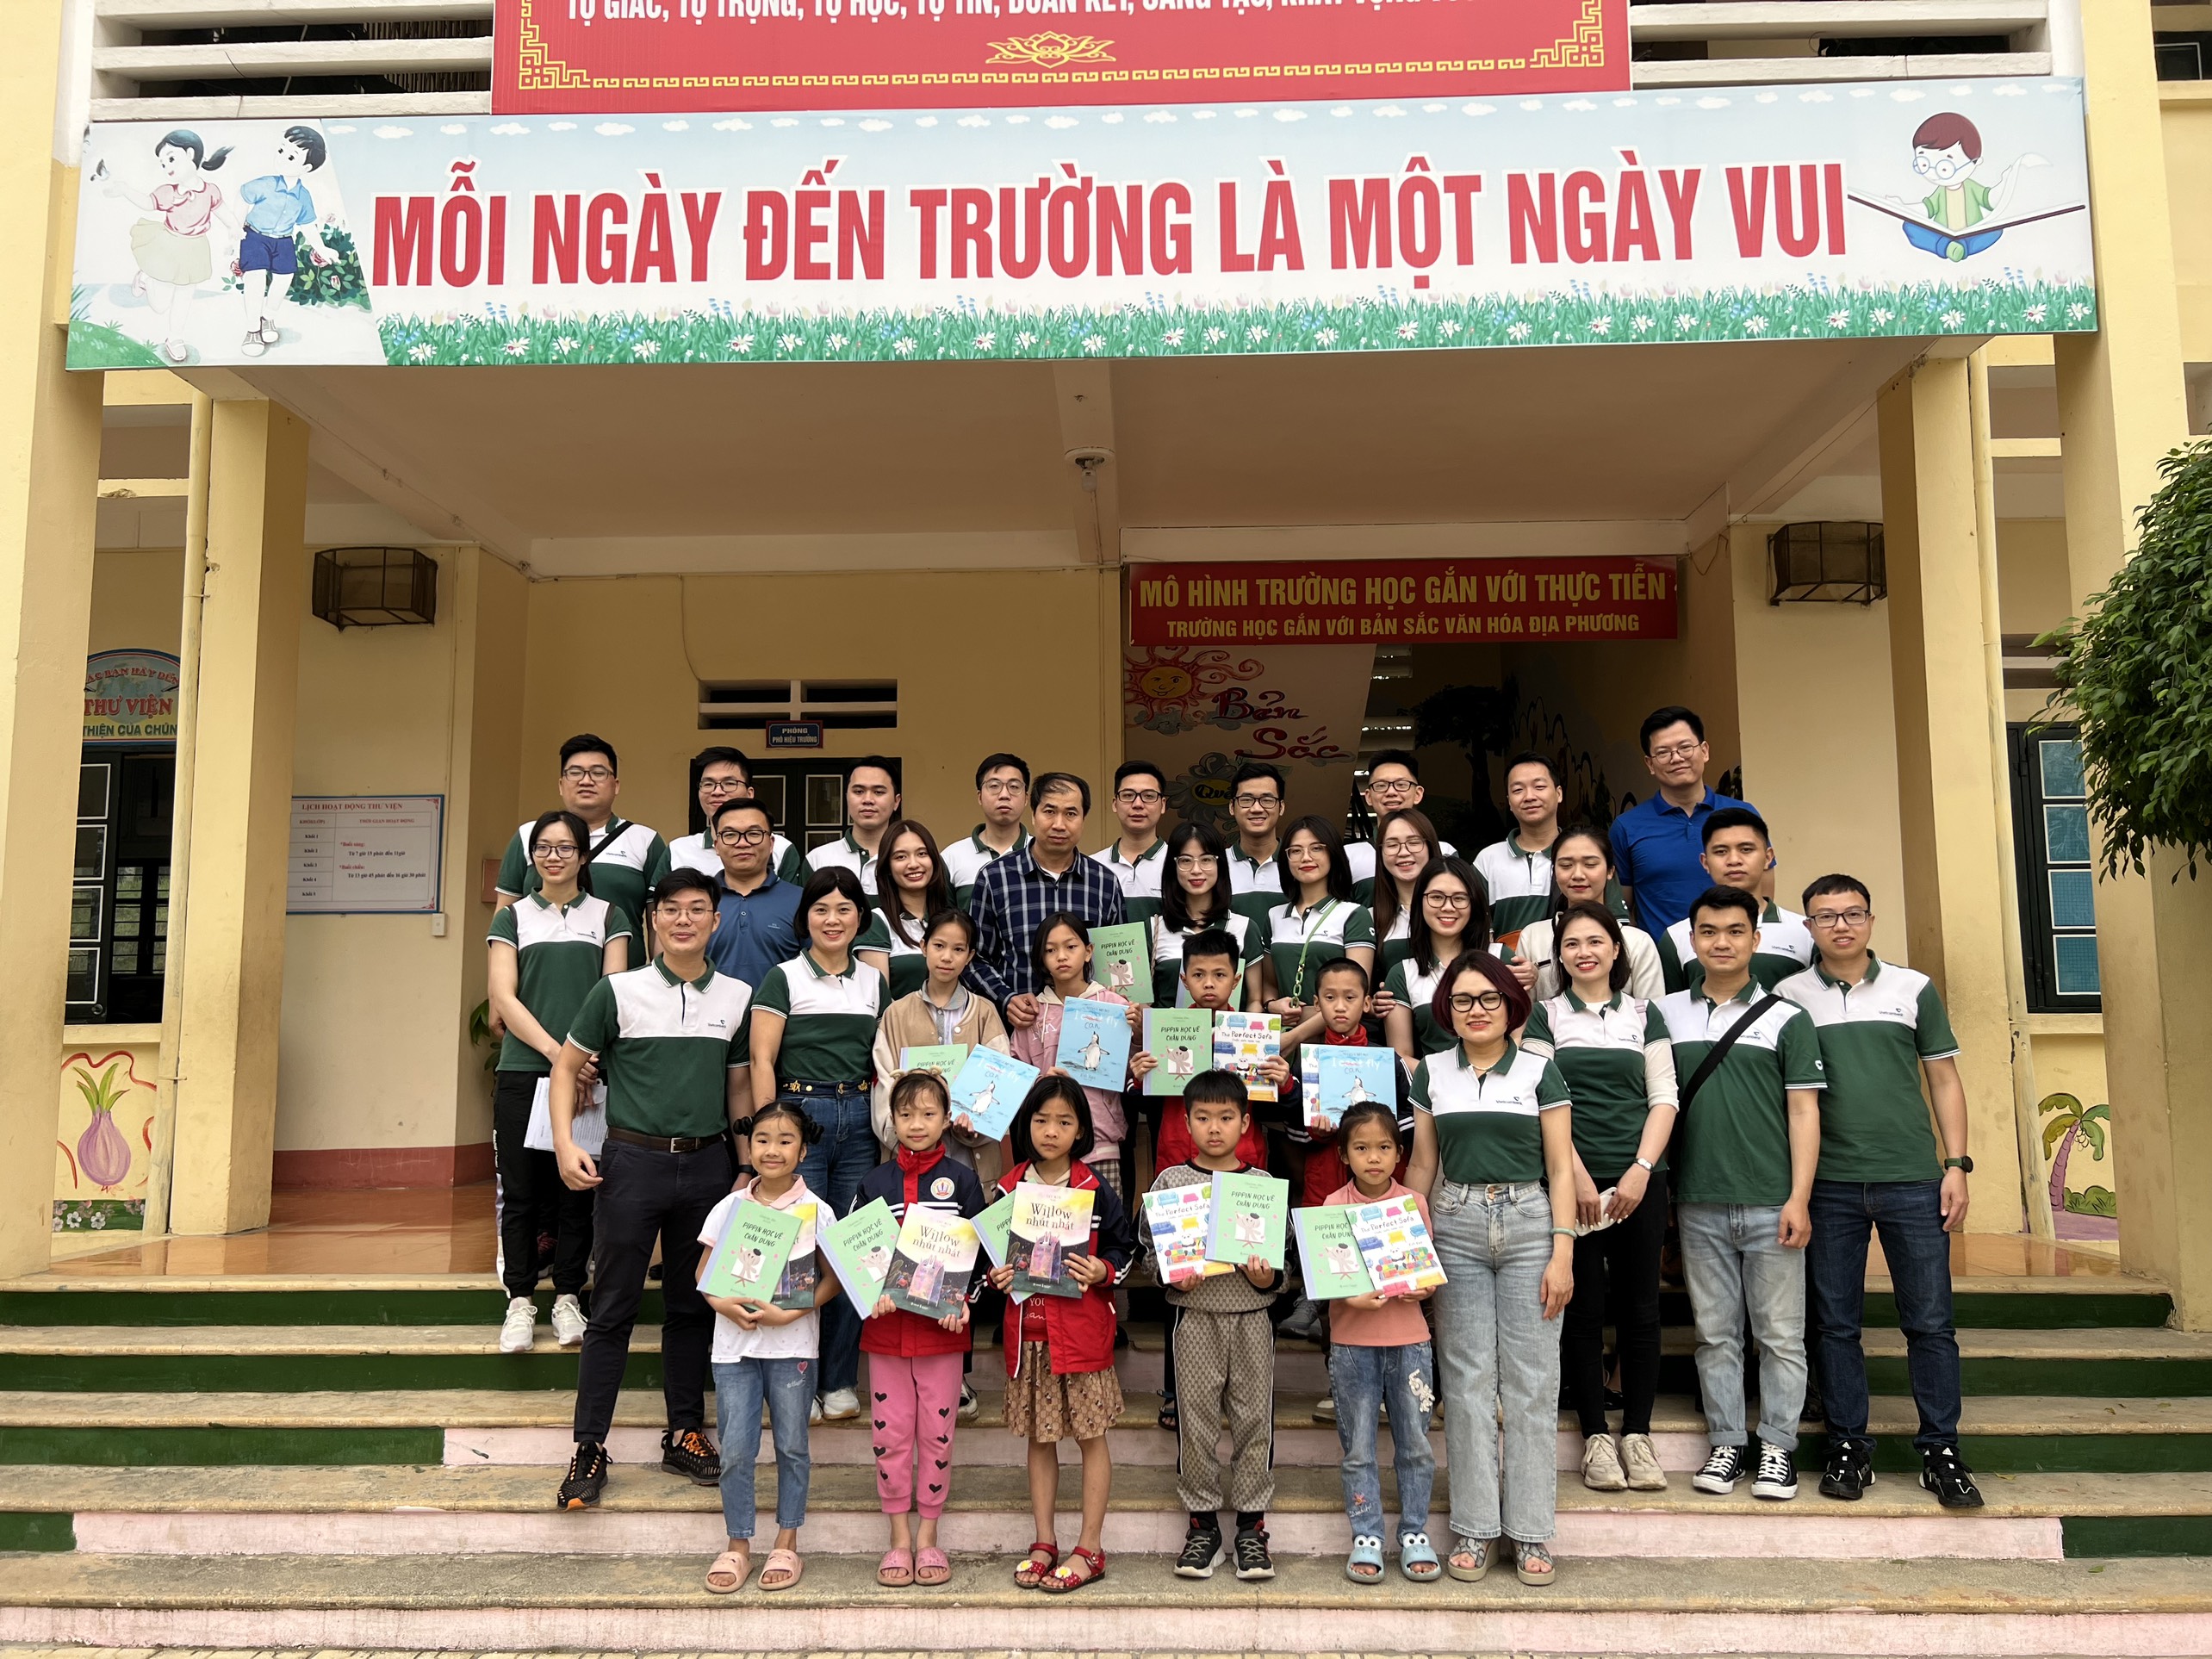 Đoàn thanh niên Vietcombank Chương Dương tổ chức chương trình thiện nguyện trao tặng sách cho trẻ em vùng cao